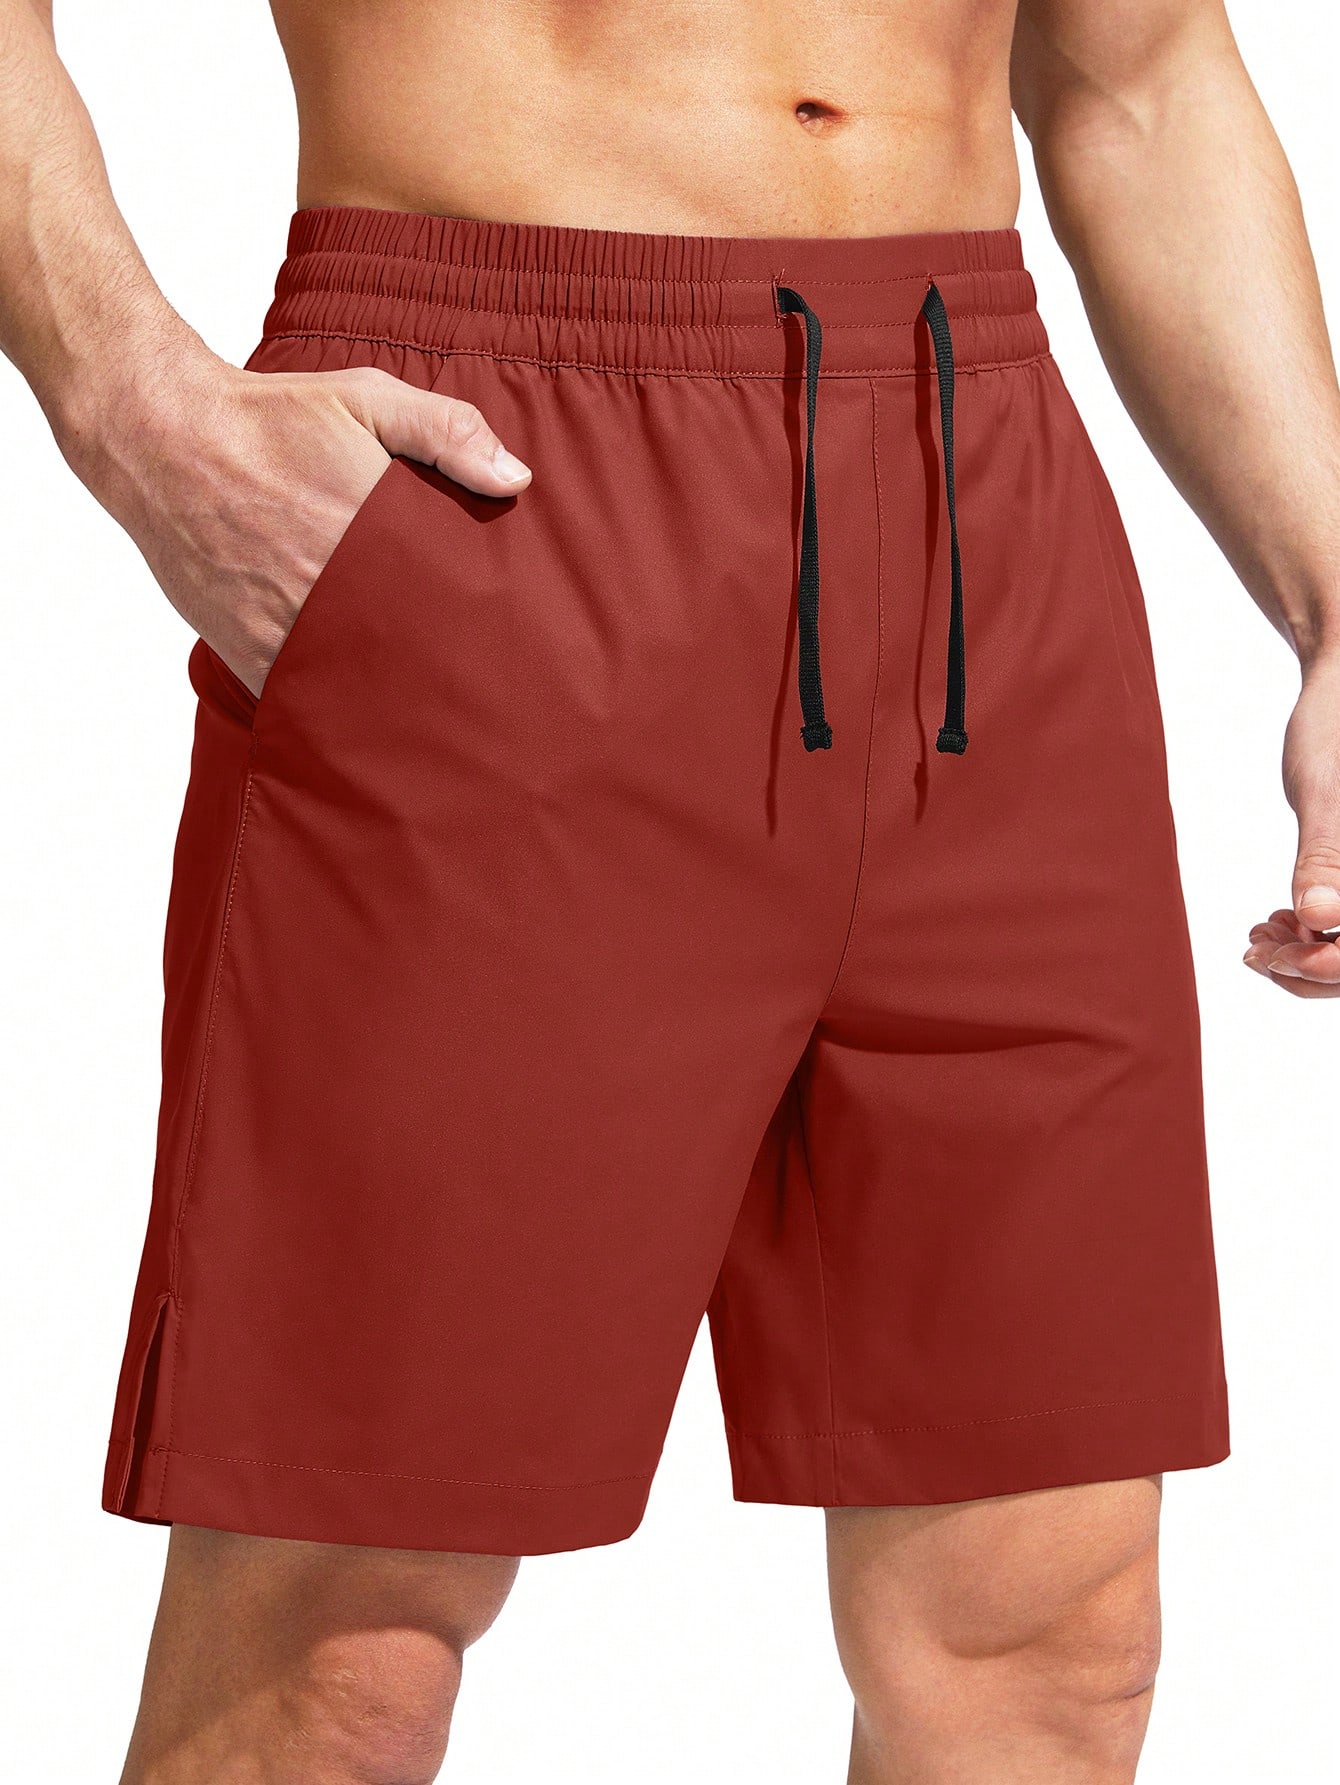 G Gradual G Gradual Мужские плавки Быстросохнущий купальный костюм Пляжные шорты для мужчин с карманами на молнии и сетчатой ​​подкладкой Серые шорты, красный шорты g